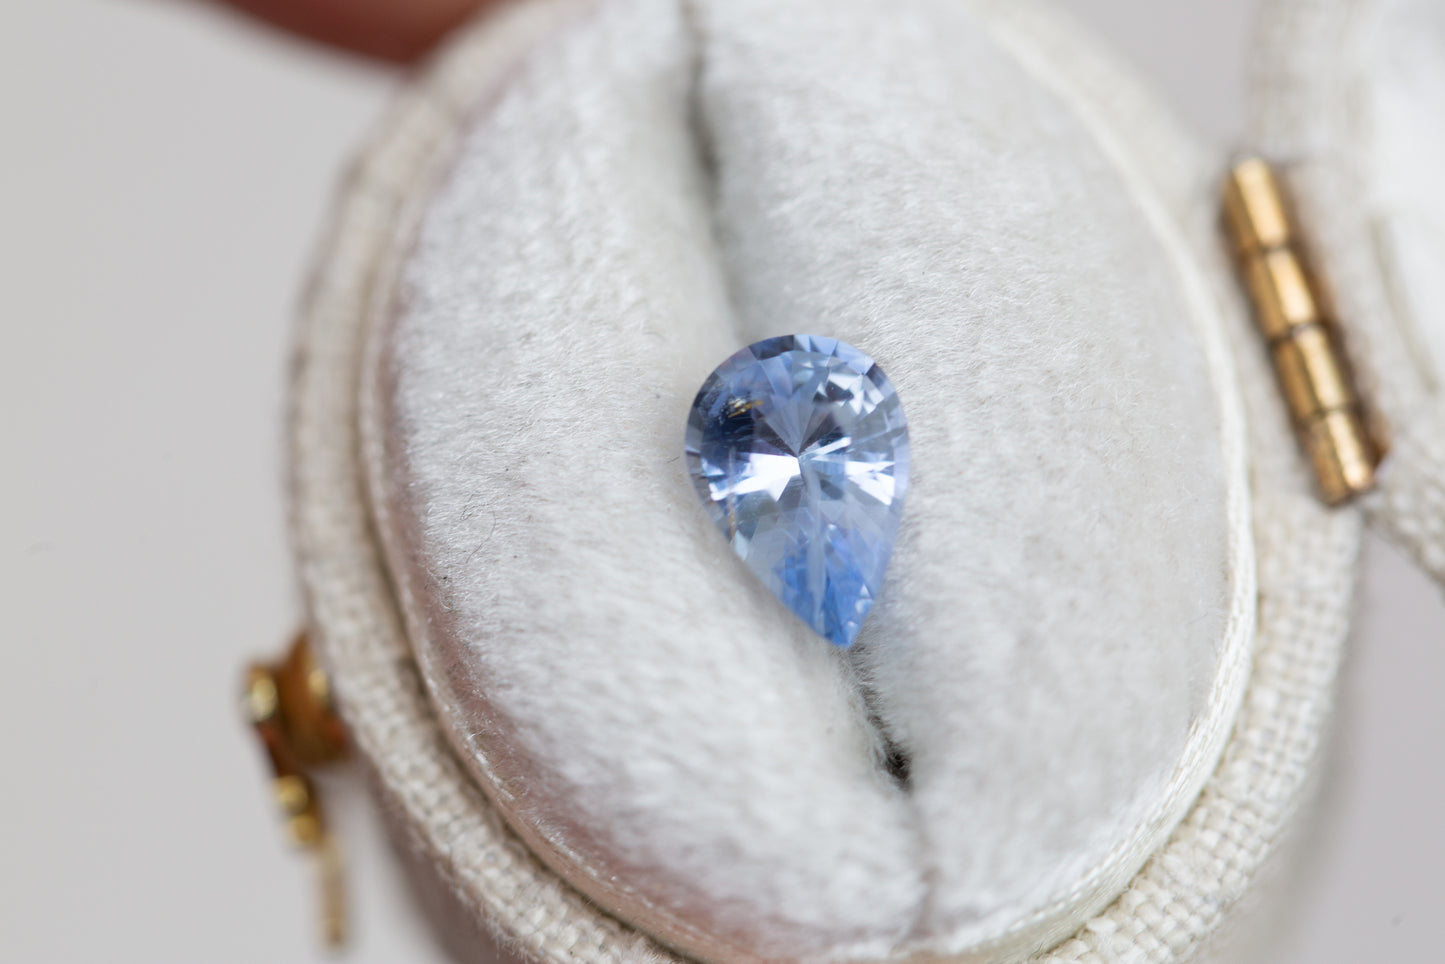 Buy 2 Carat Light Blue Sapphire Engagement Ring, Vintage Inspired White  Gold Diamond Filigree Ring With Milgrain Bezel Online in India - Etsy